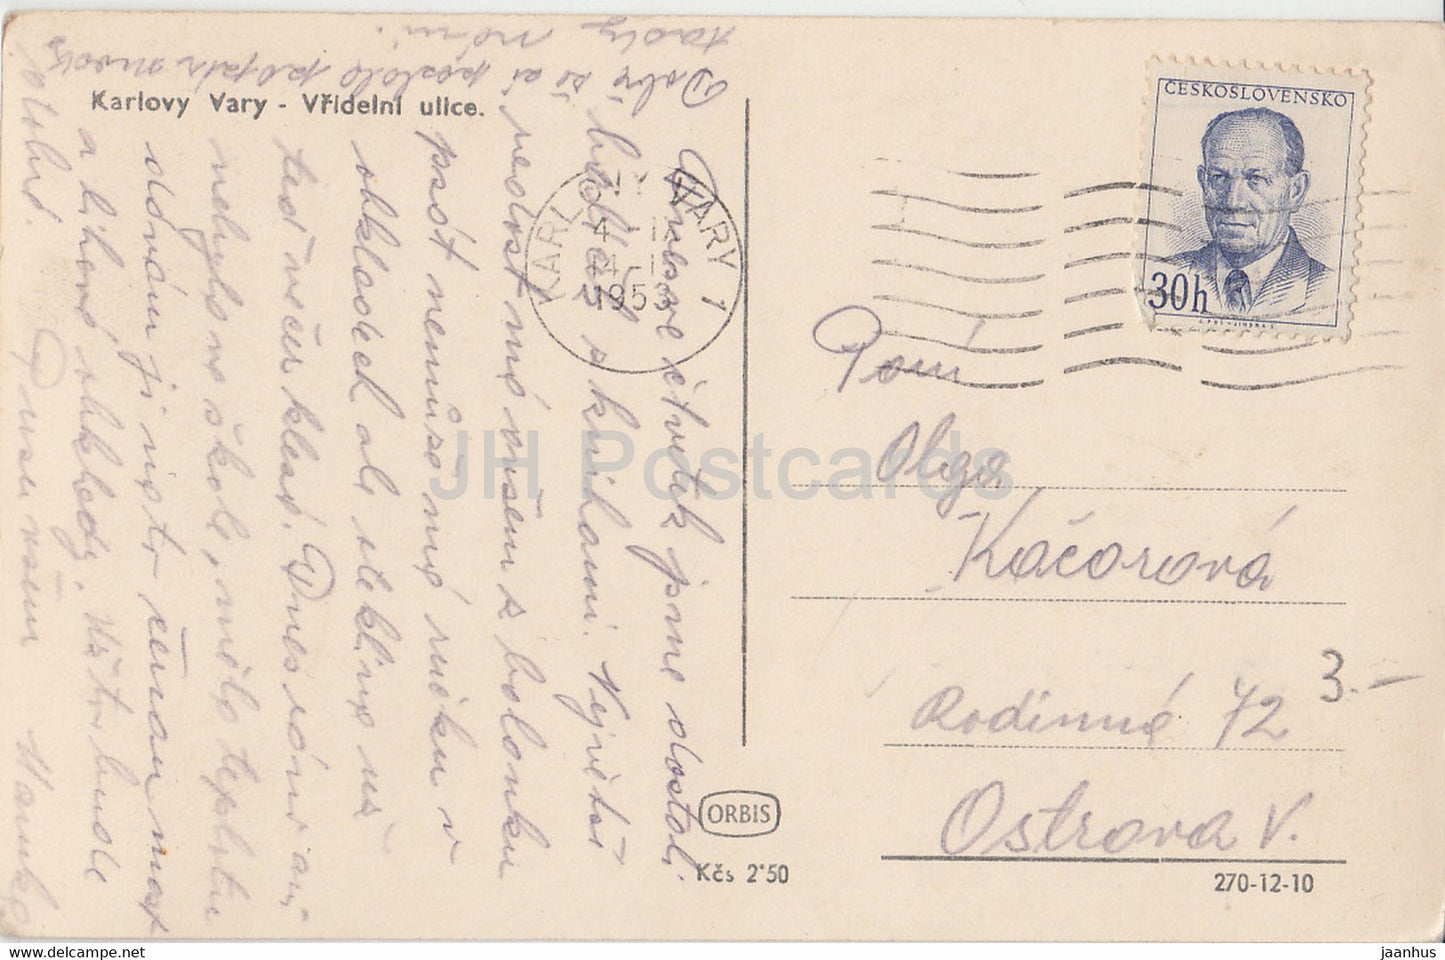 Karlovy Vary - Karlsbad - Vridelni ulice - carte postale ancienne - 1953 - Tchécoslovaquie - République tchèque - utilisé